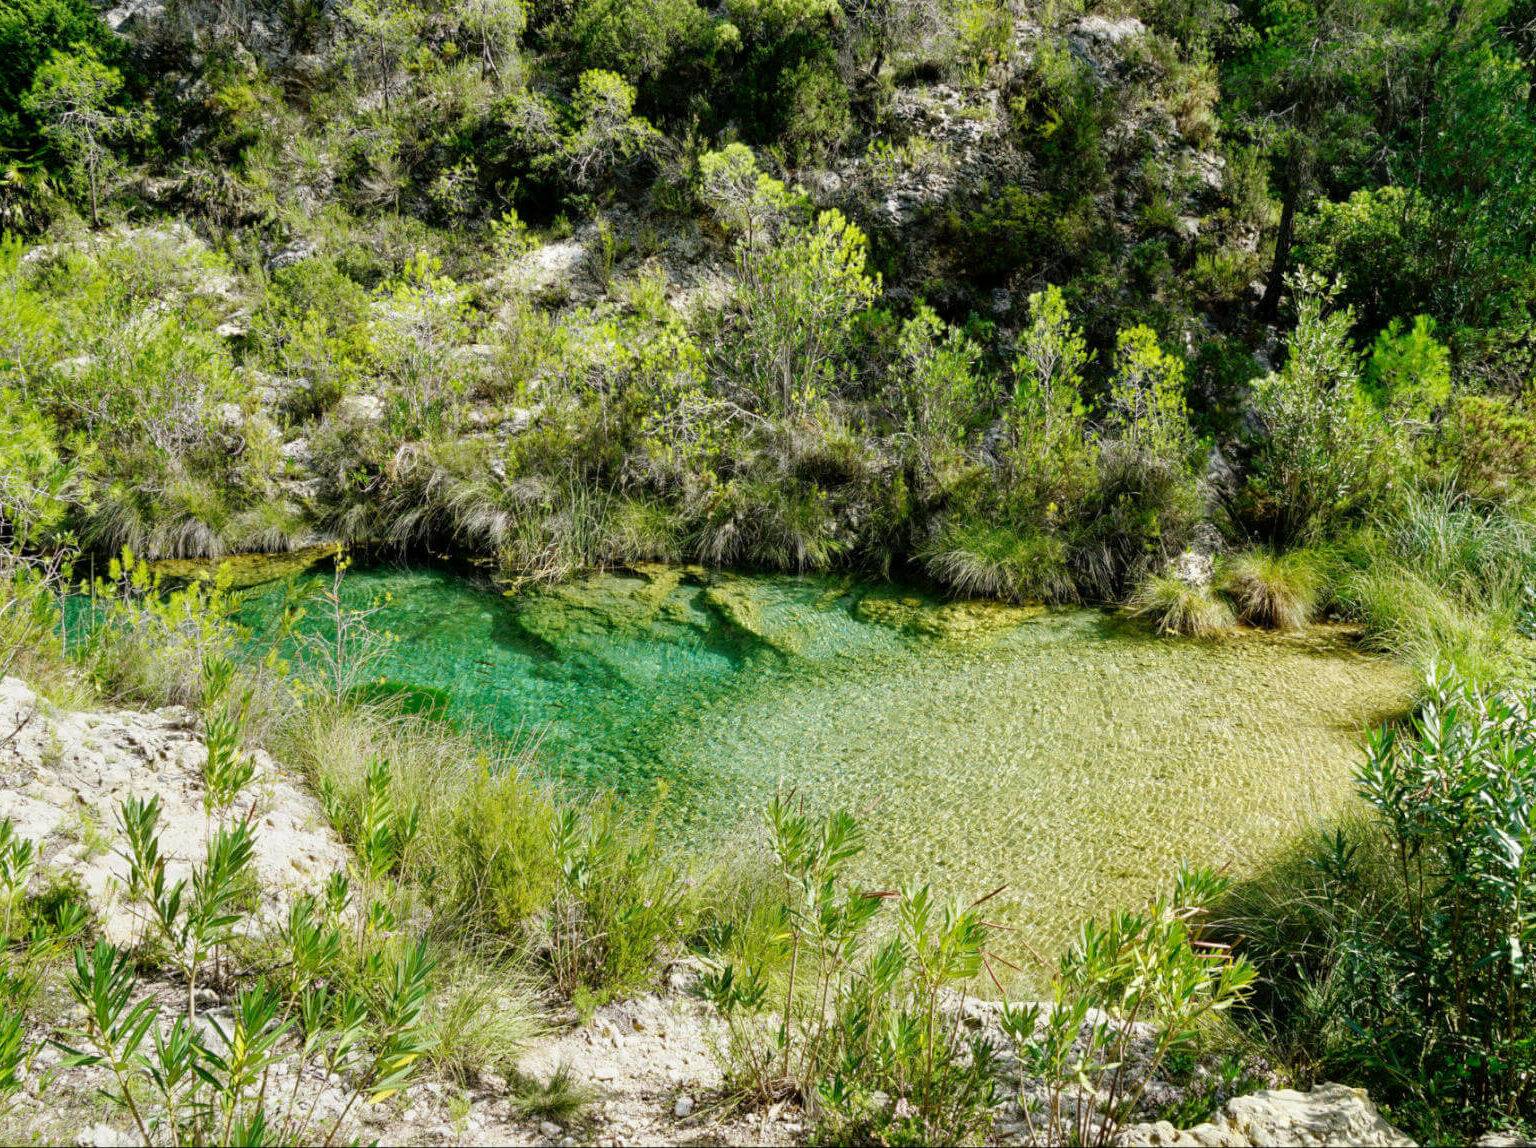 Ein grüner Naturpool am Río Cazuma in der Umgebung von Valencia - ein echter Geheimtipp zum Abkühlen nach dem Wandern.